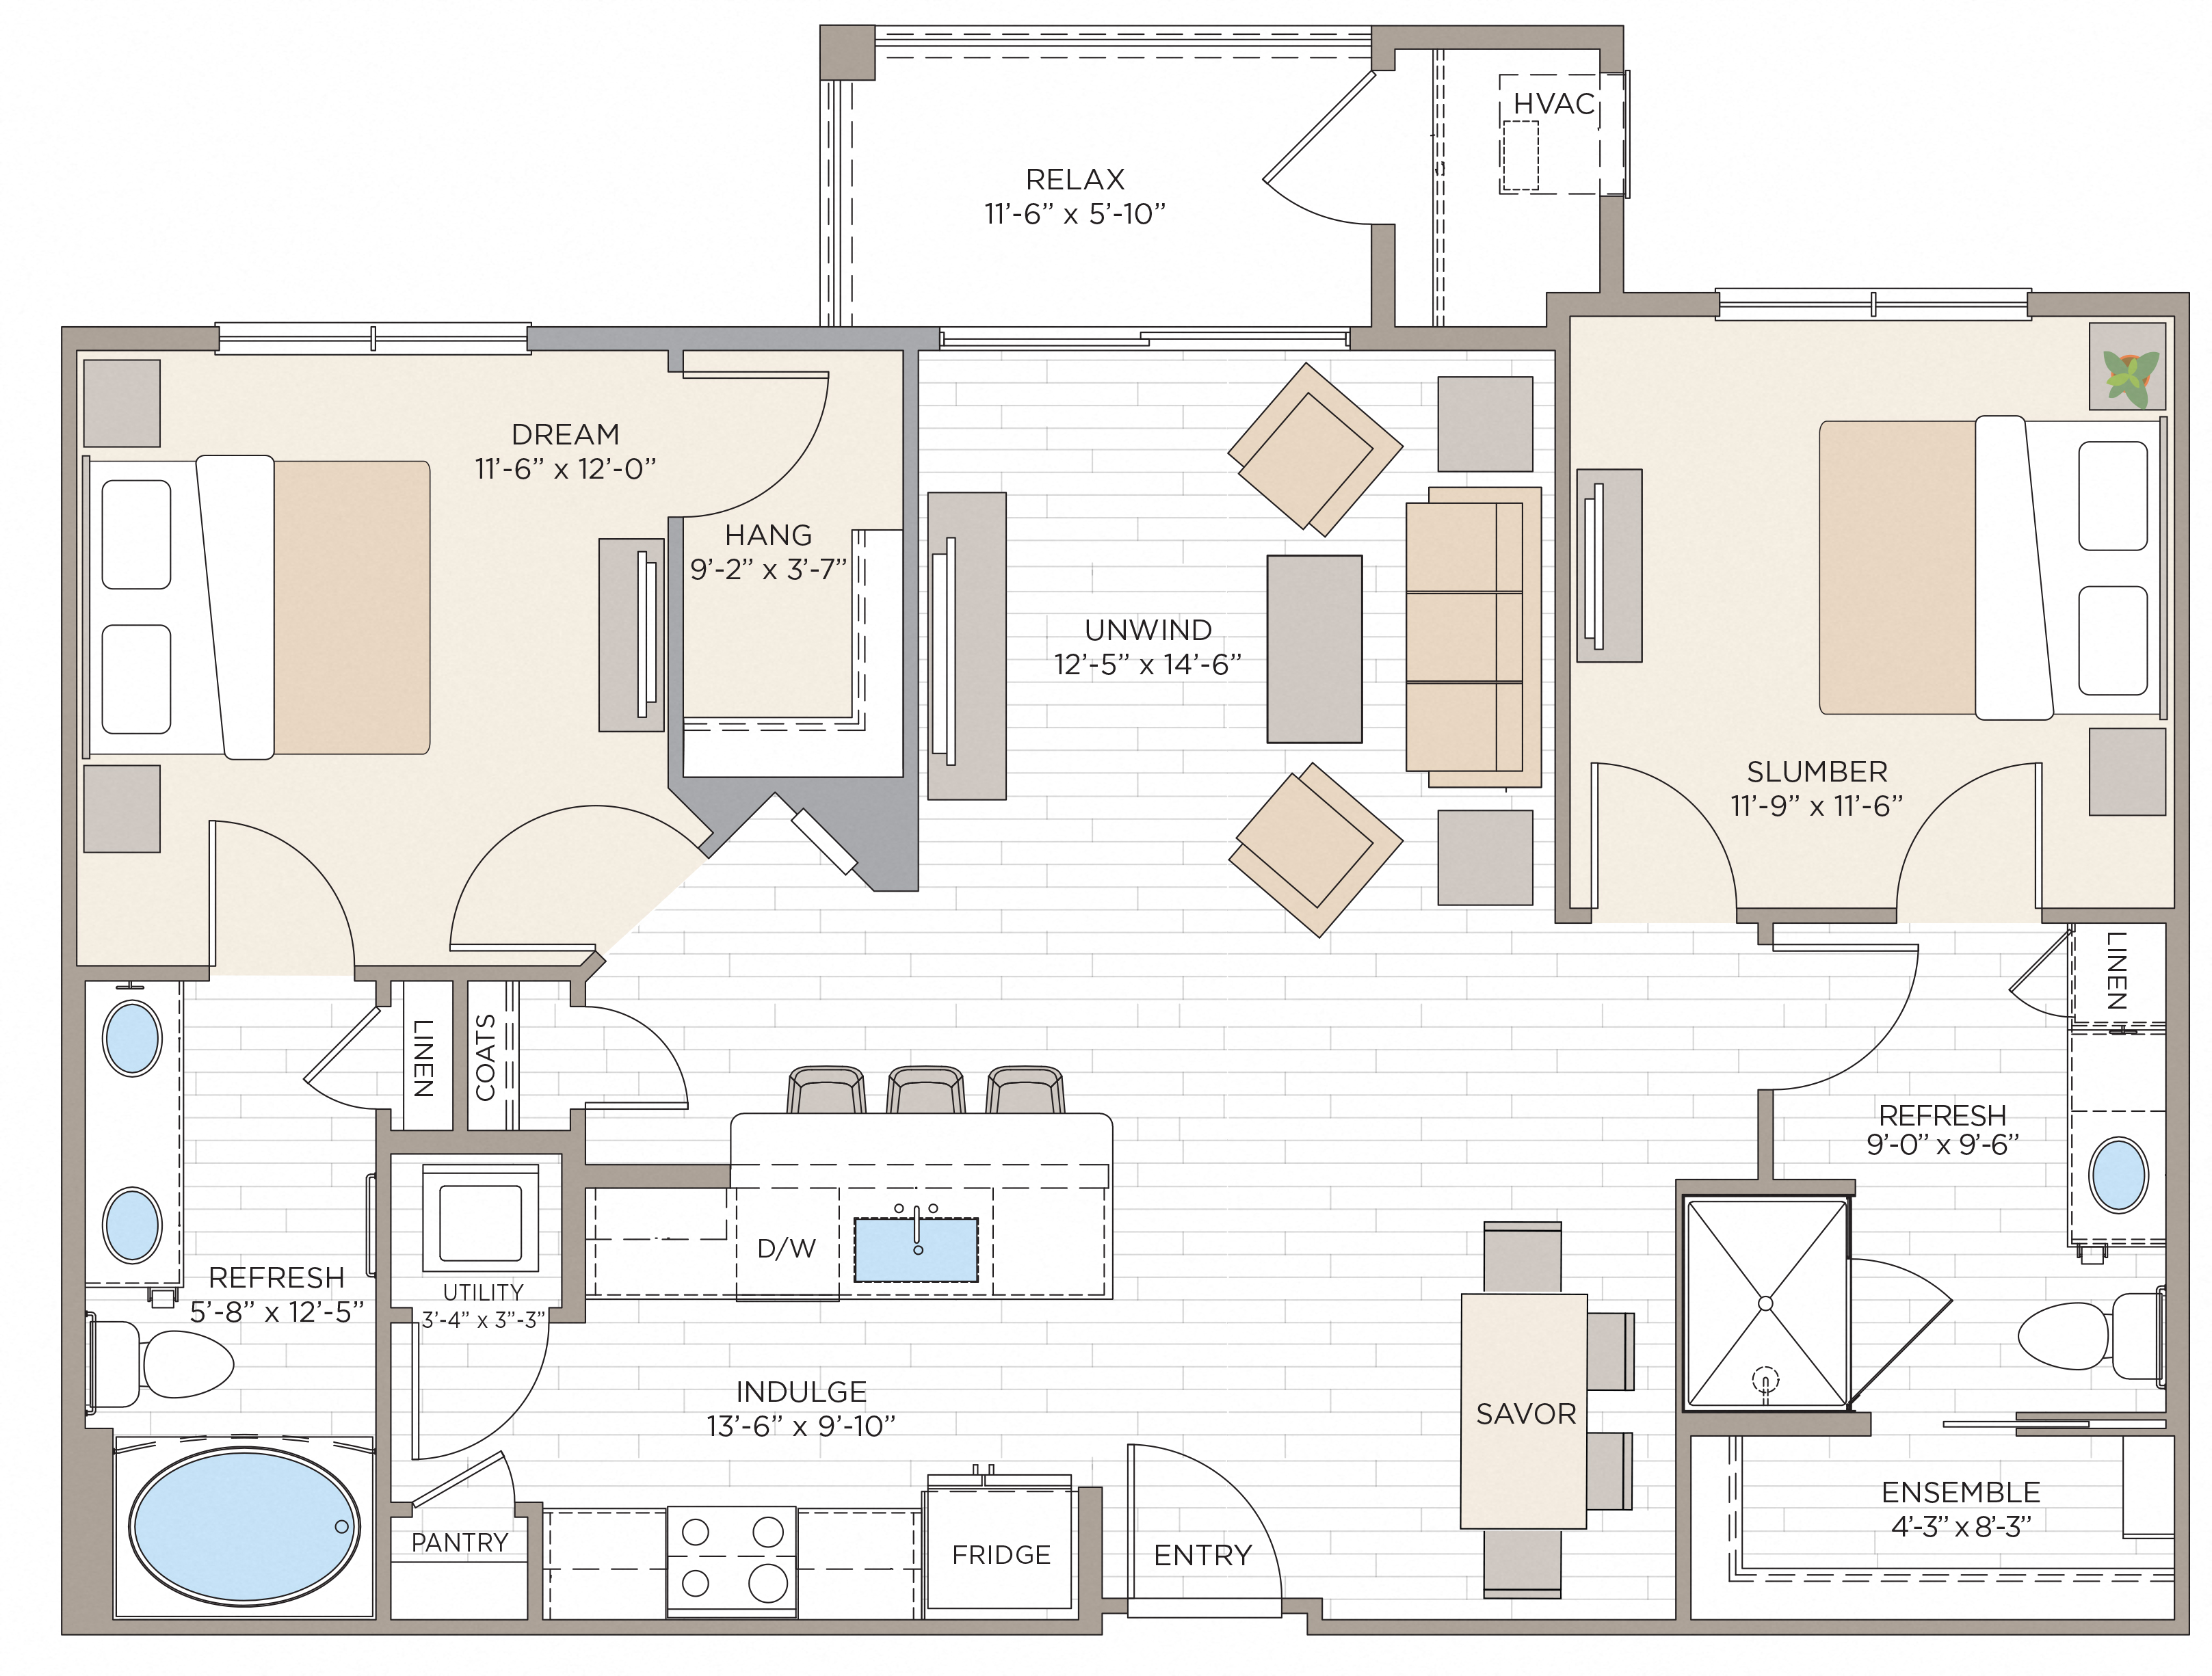 Floorplan for Apartment #14111, 2 bedroom unit at Halstead Maynard Crossing